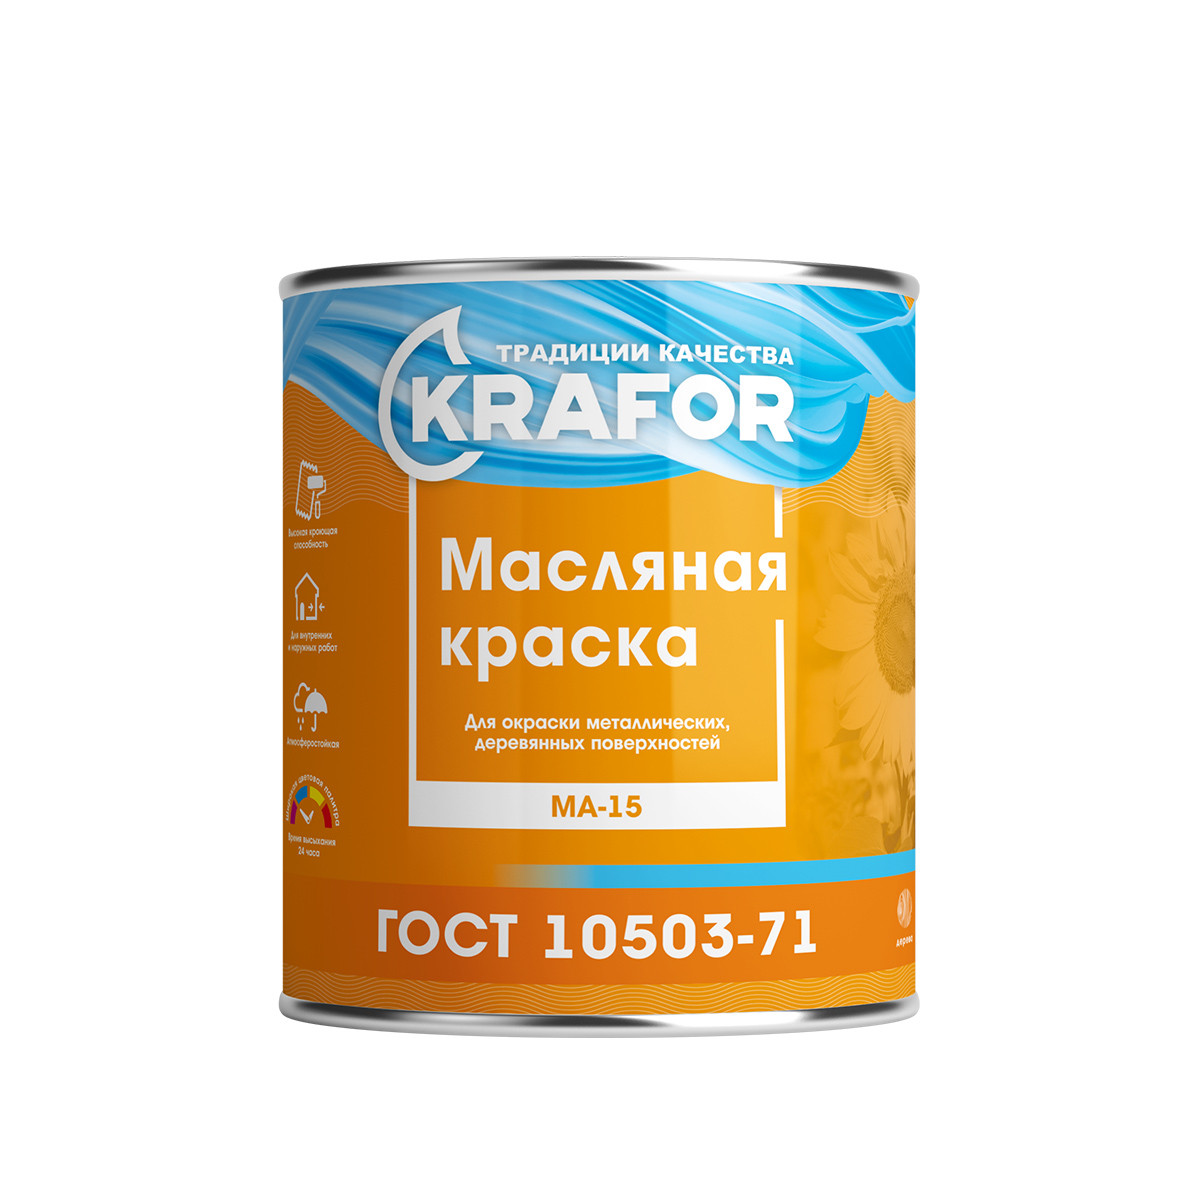 Купить Масляная краска Krafor МА-15 черная 2.5 кг